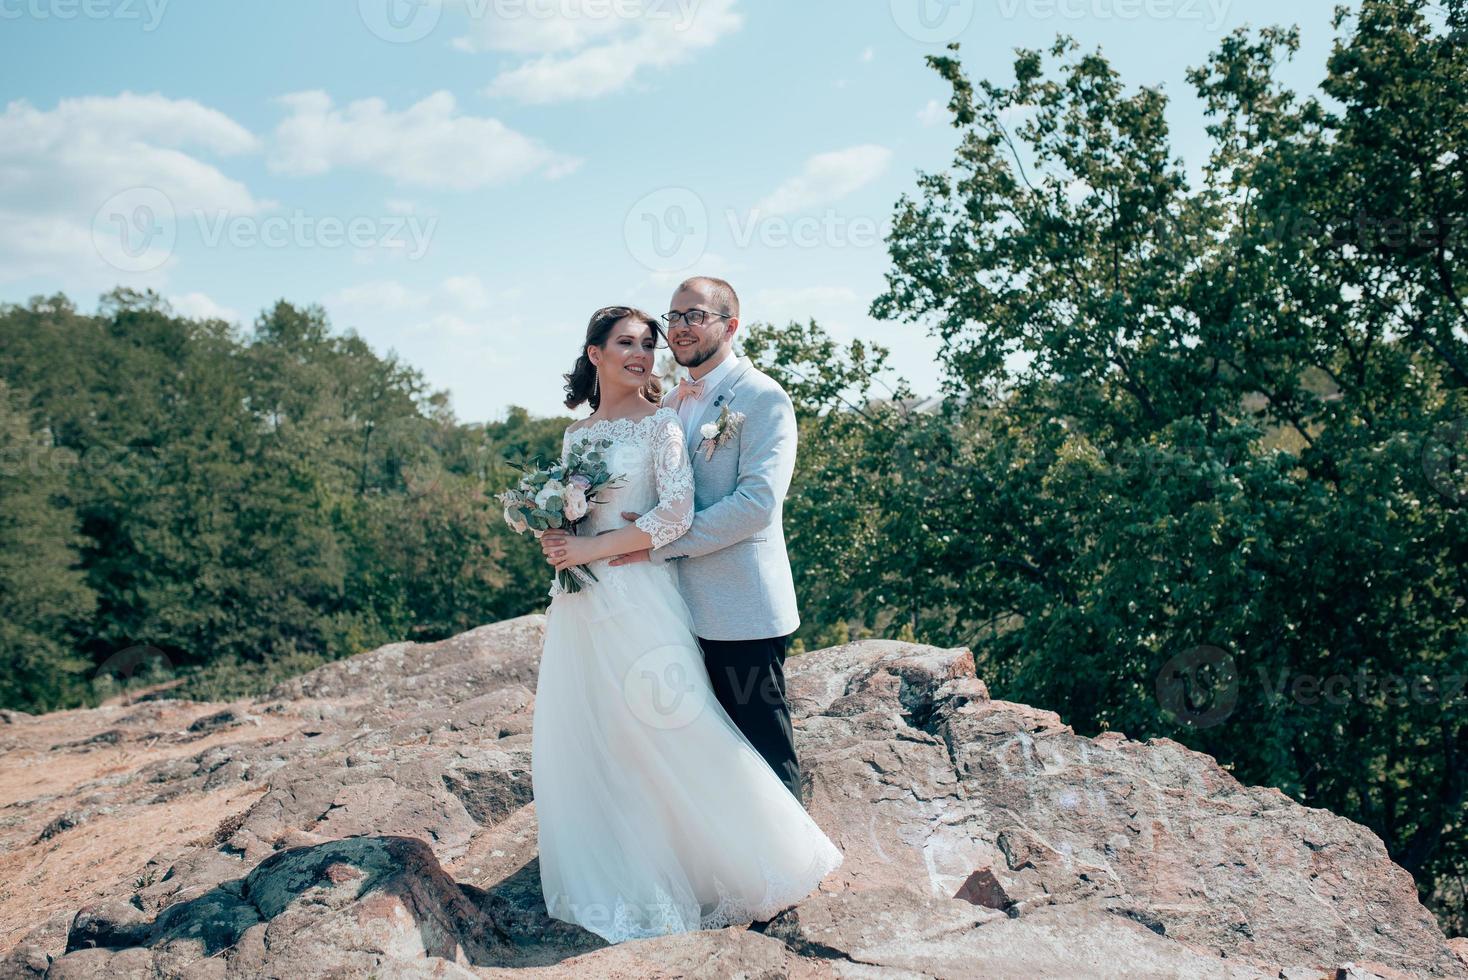 foto di matrimonio di uno sposo barbuto con gli occhiali in una giacca grigia e una sposa su una roccia